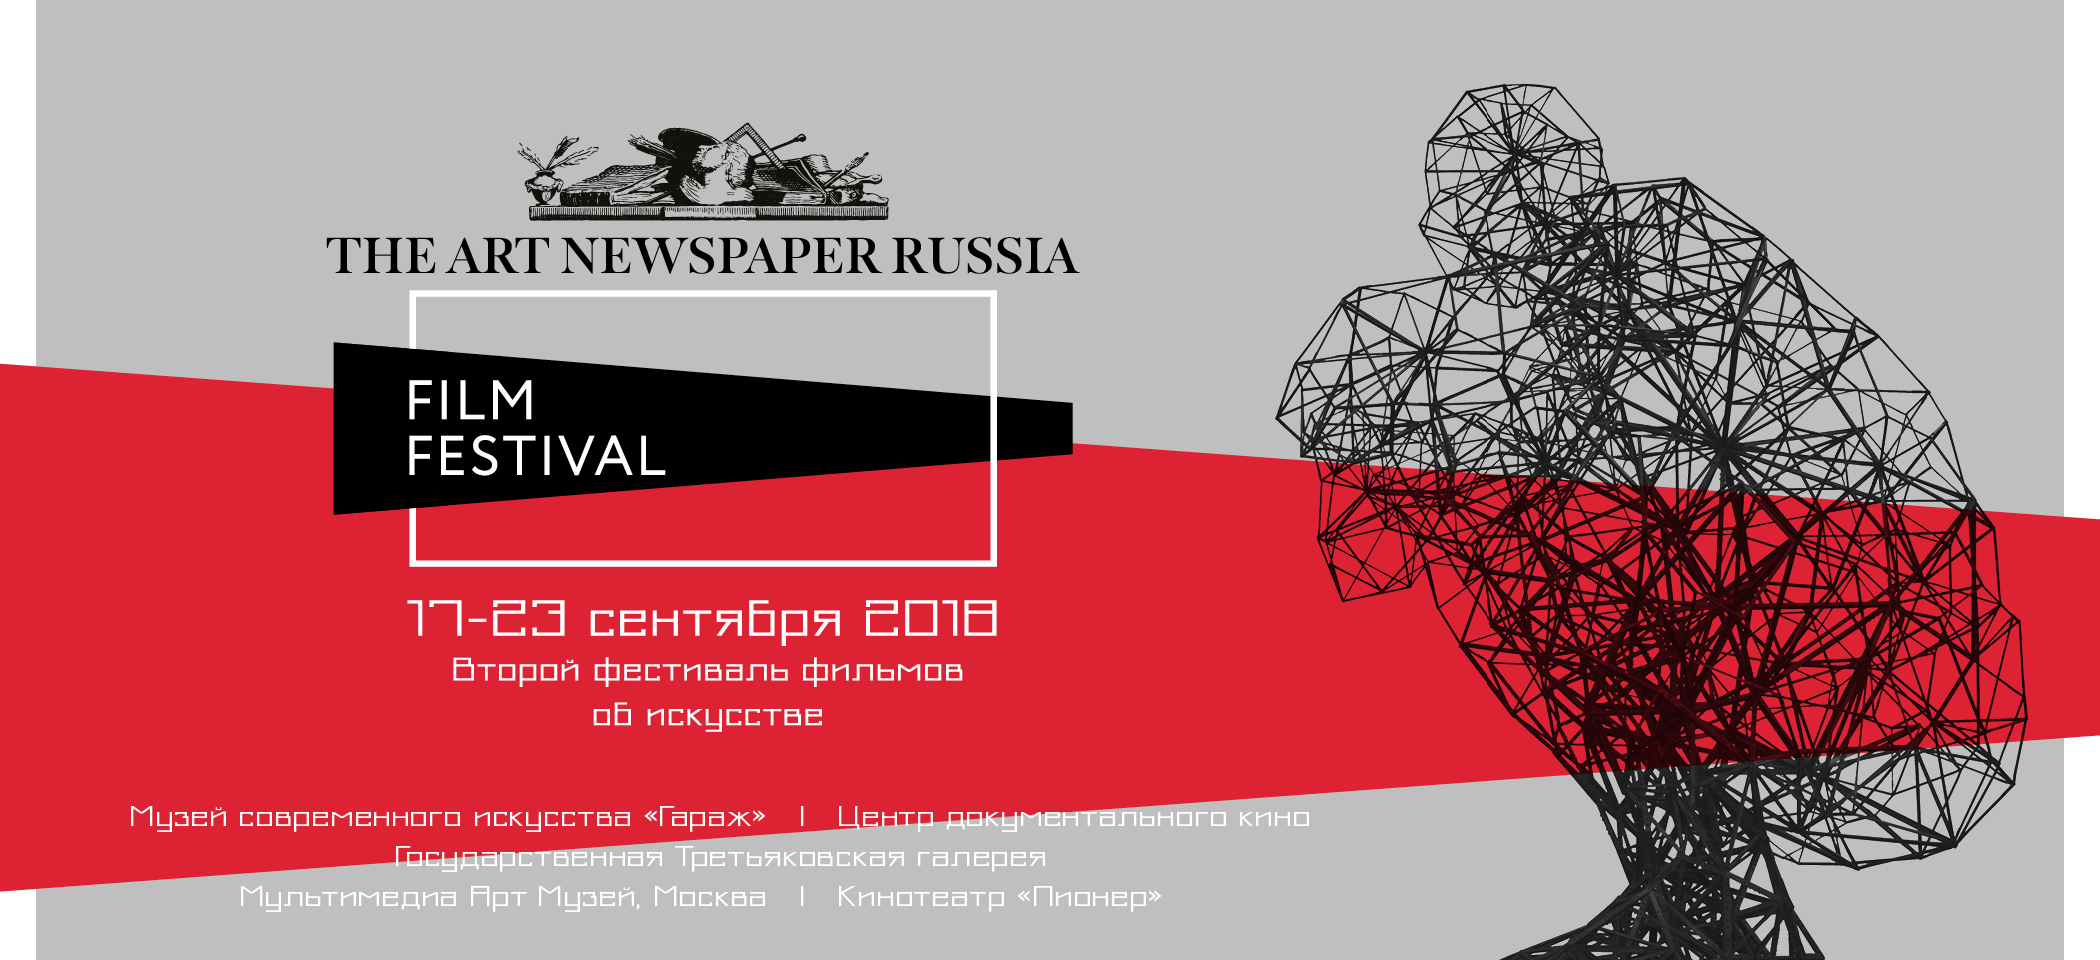 The ART Newspaper Russia Film Festival